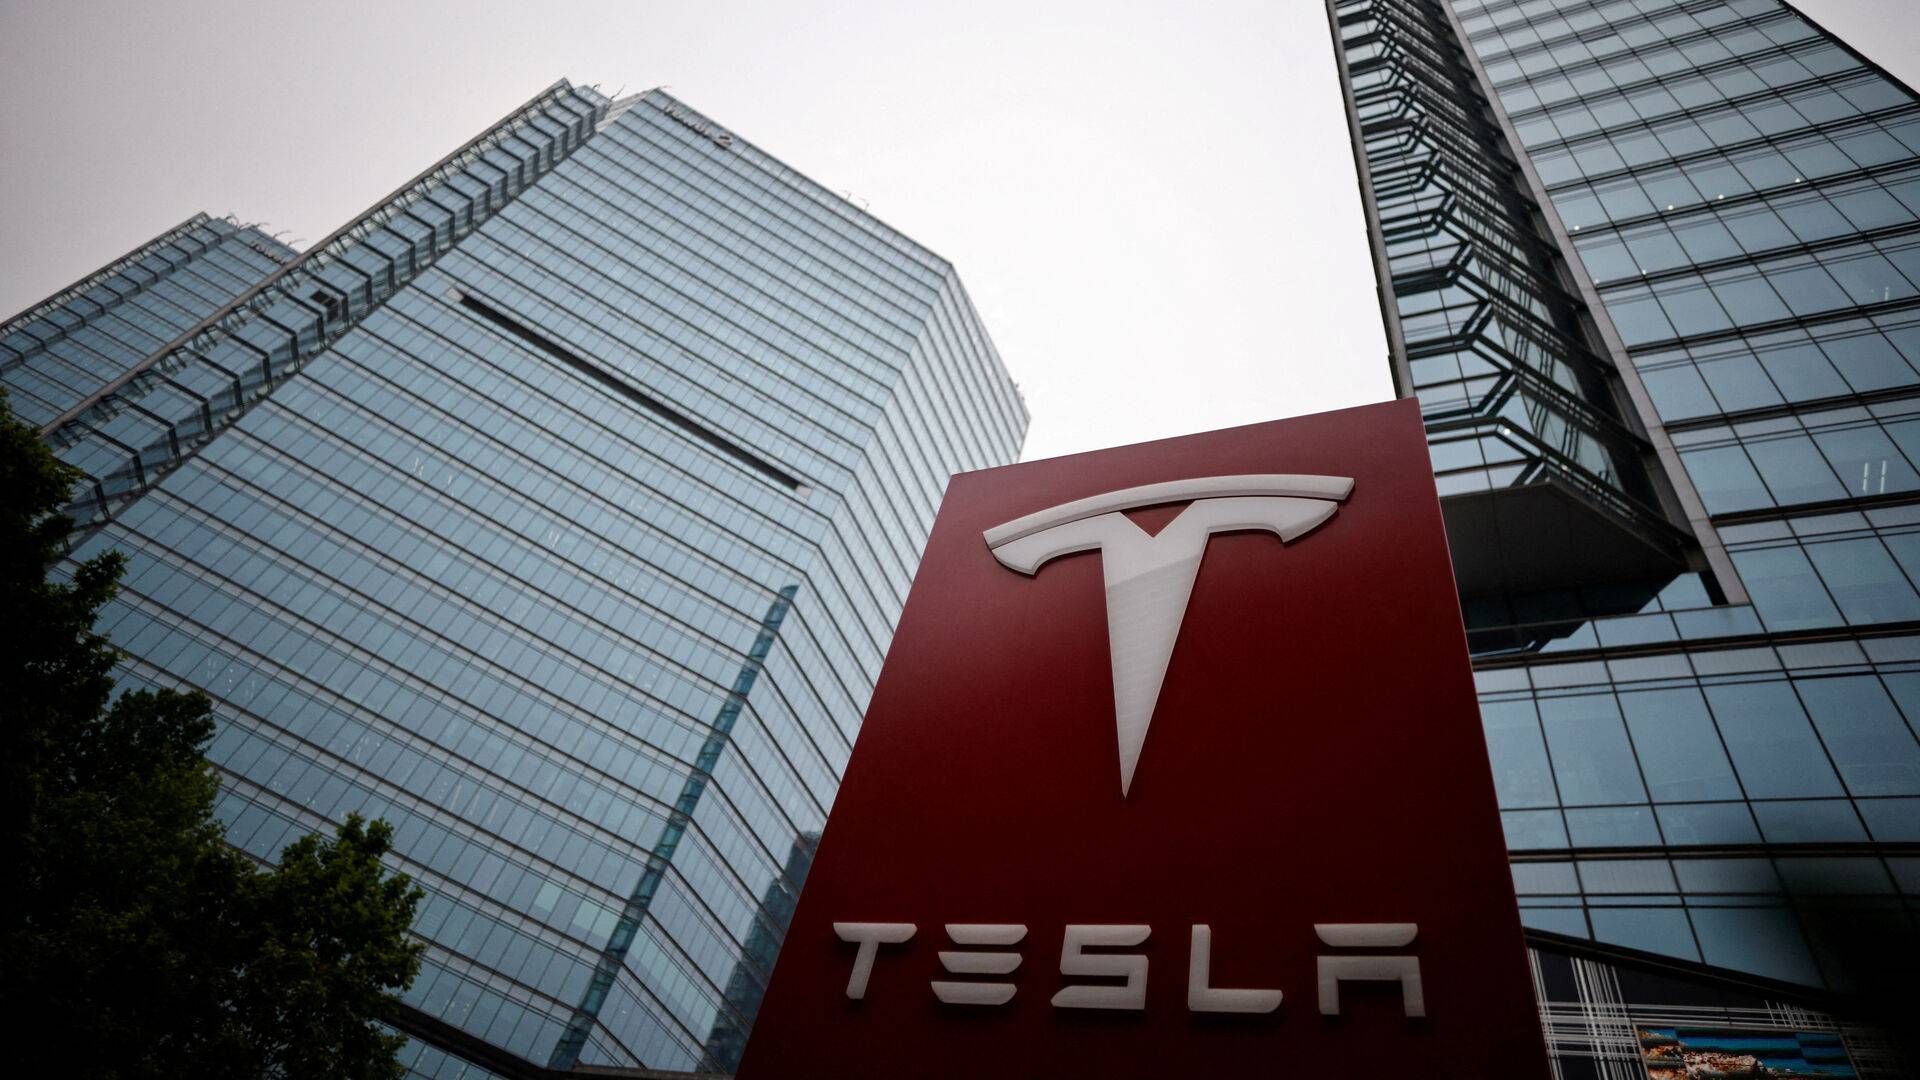 Dansk Metal vil nu forsøge at for en overenskomstaftale i hus med amerikanske Tesla, som skal gælde de danske værkstedsansatte. | Foto: Thomas Peter/Reuters/Ritzau Scanpix